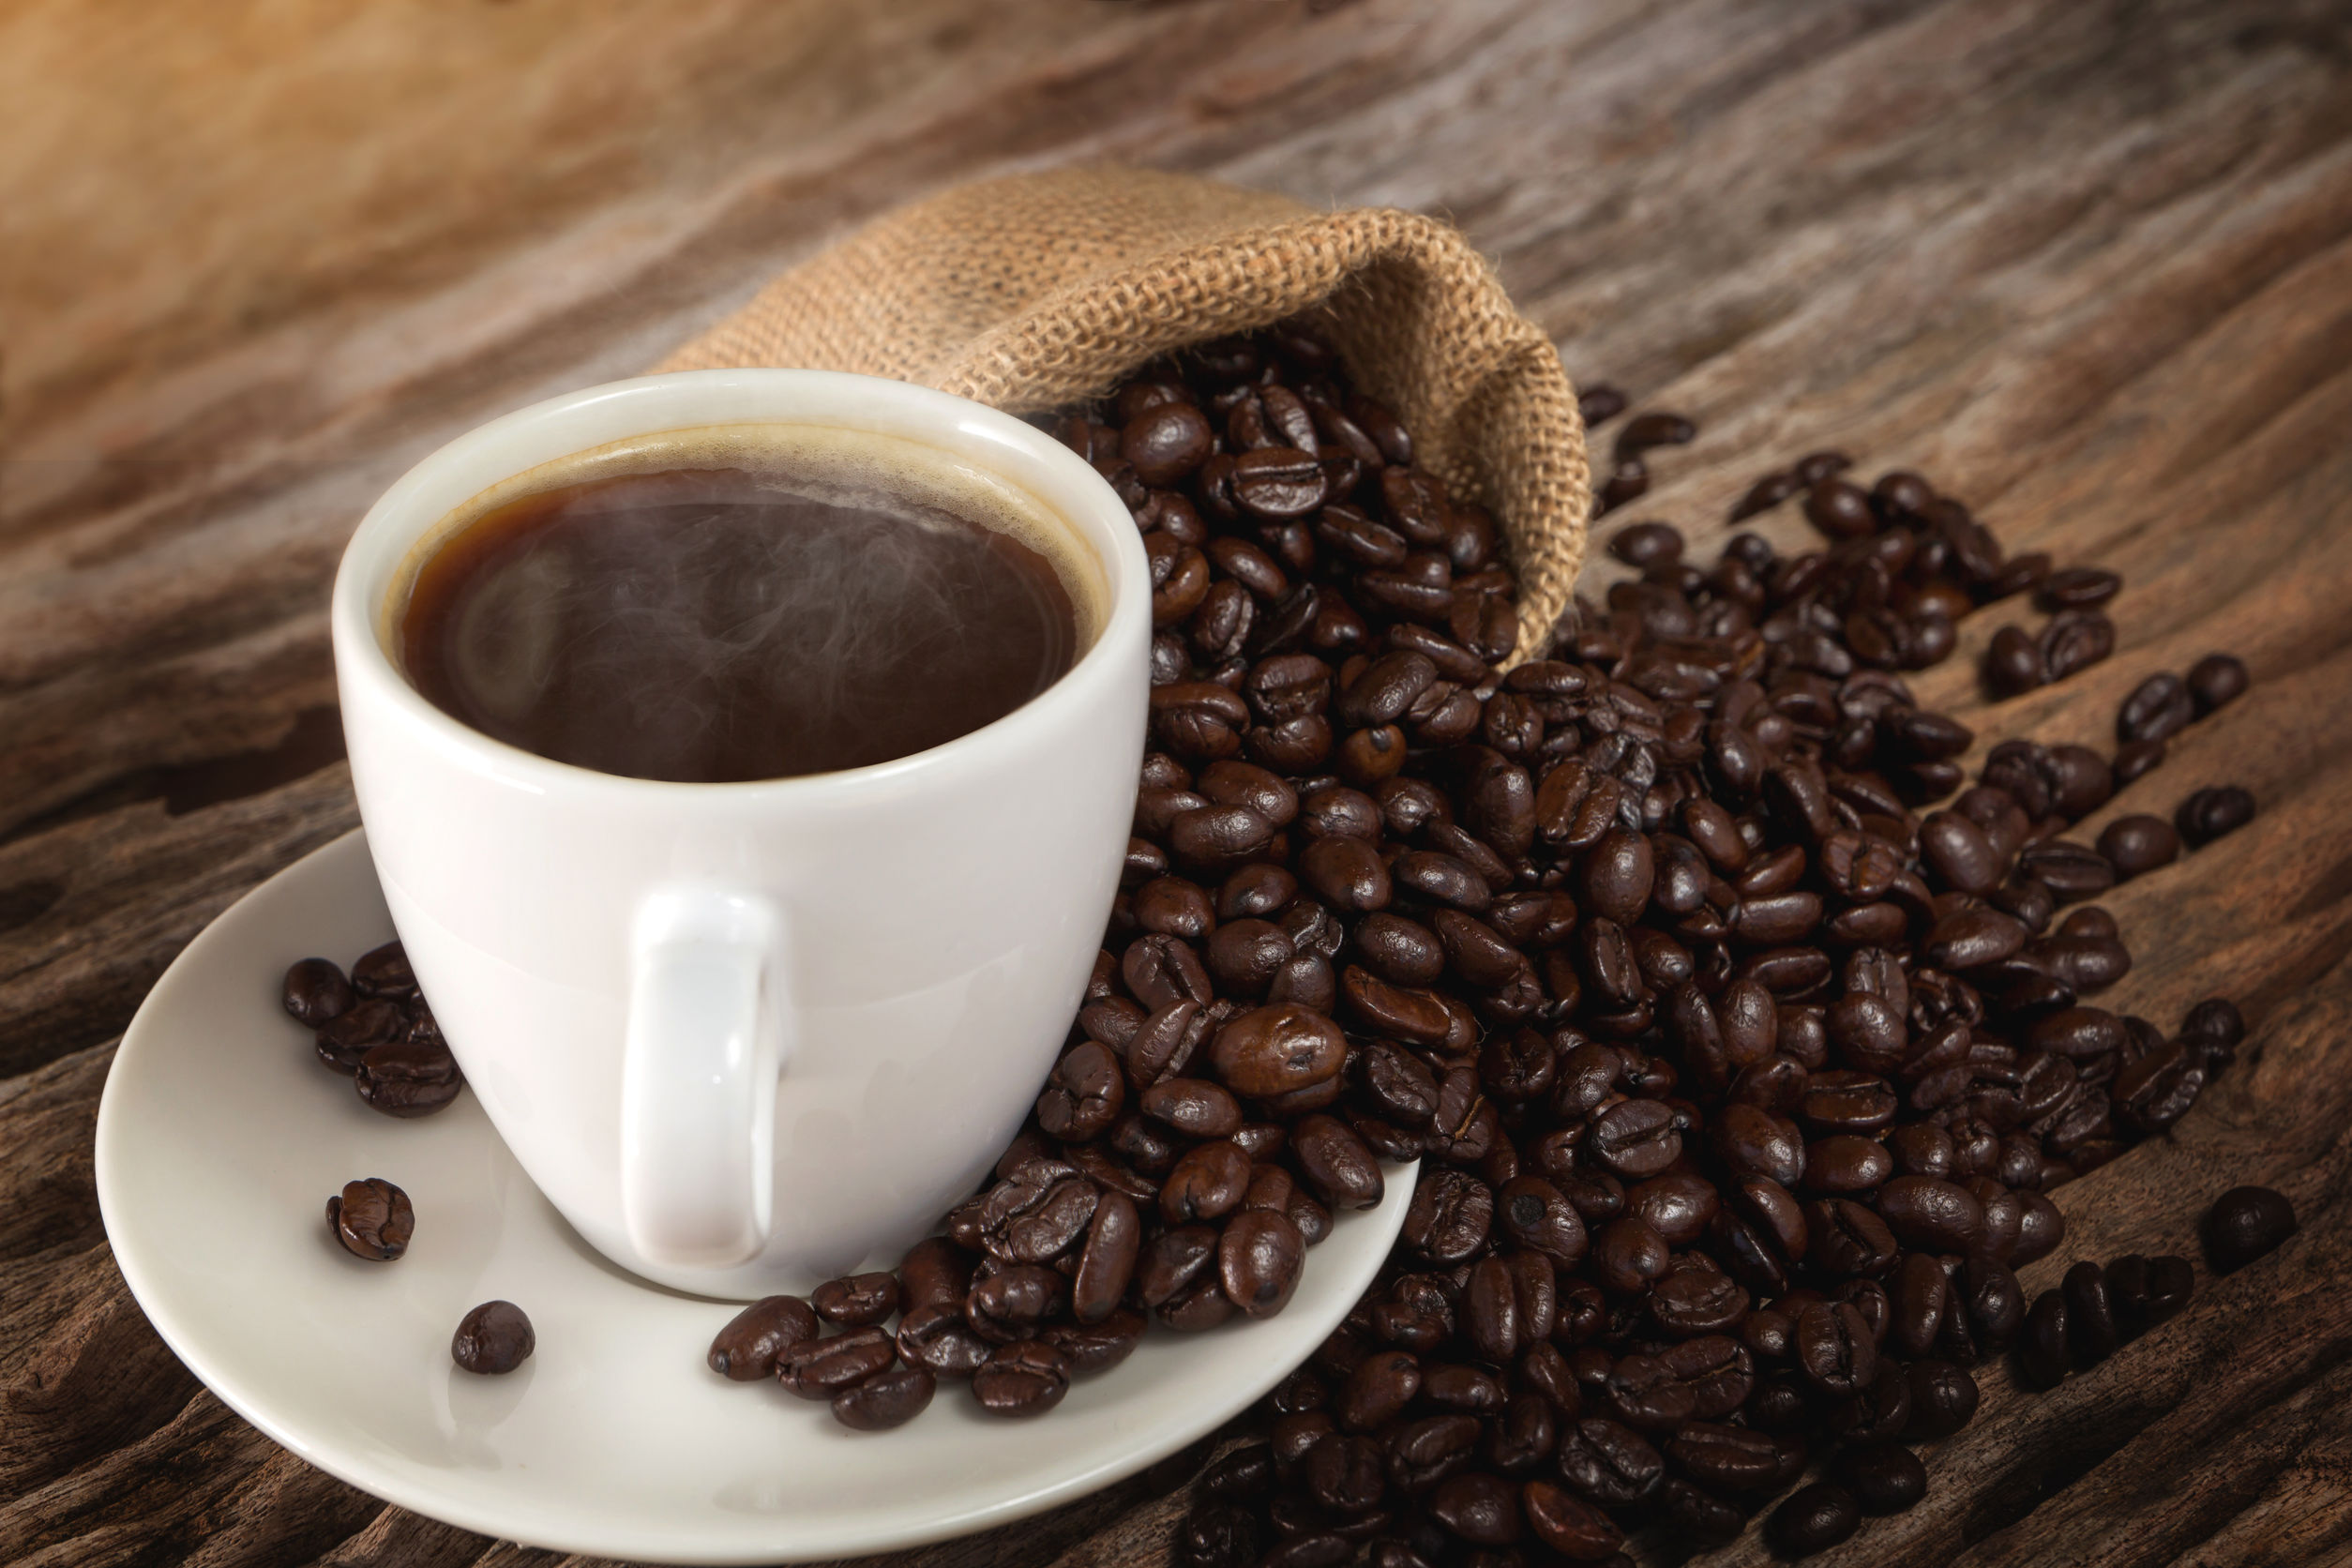 Le Migliori Marche Di Caffe Colombiano Nel 2021 Recensioni E Scelte Migliori